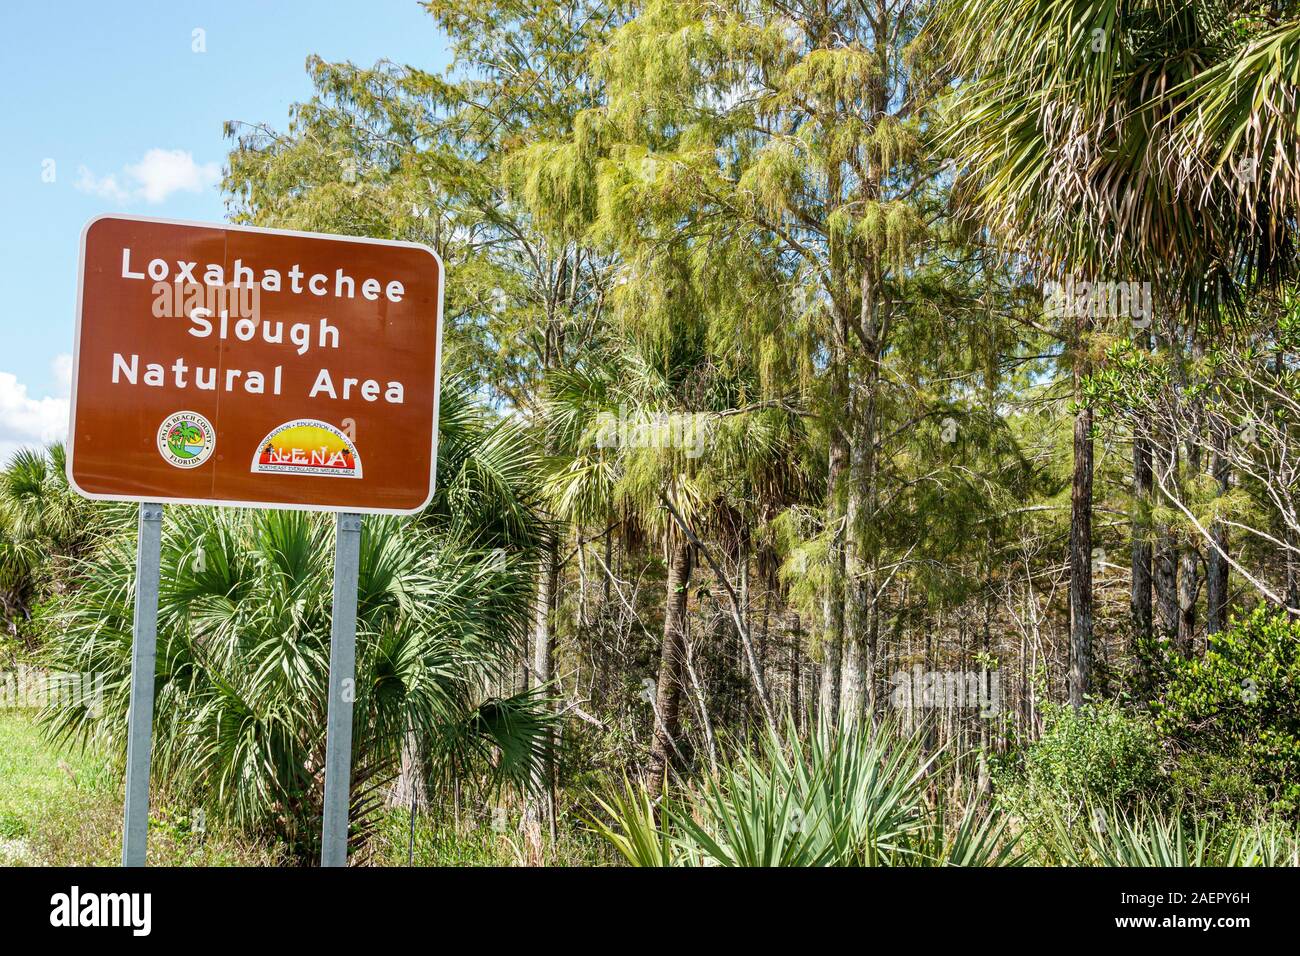 Palm Beach Gardens Florida,Loxahatchee Slough Natural Area,réserve de terres humides,refuge de la faune,panneau d'entrée,FL191110034 Banque D'Images